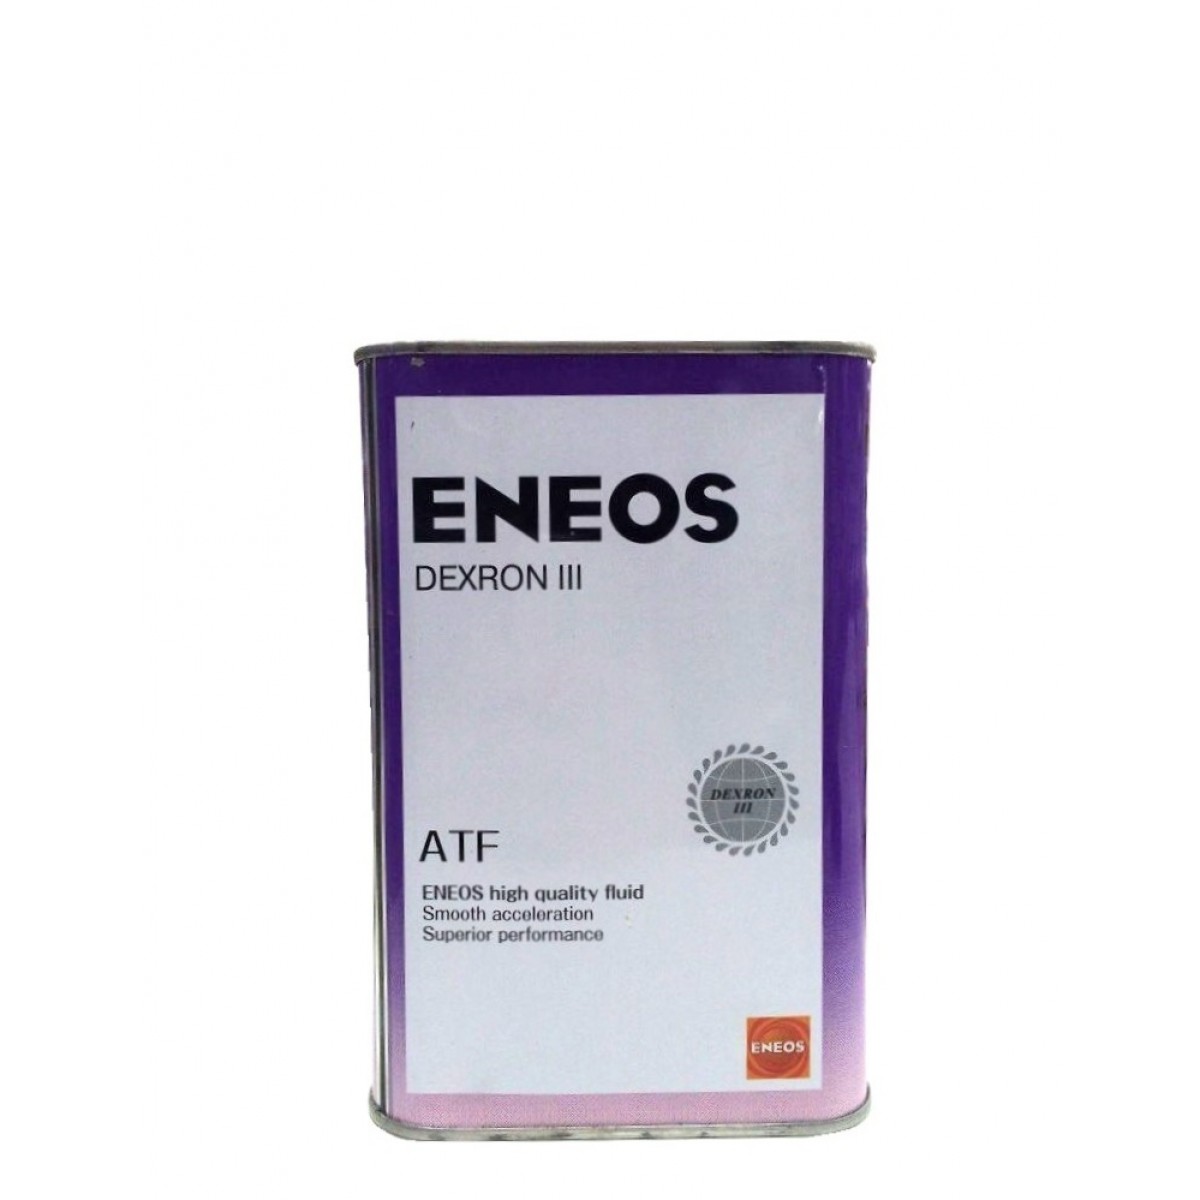 ENEOS ATF 3. ENEOS oil1305. ATF Dexron 3 енеос.